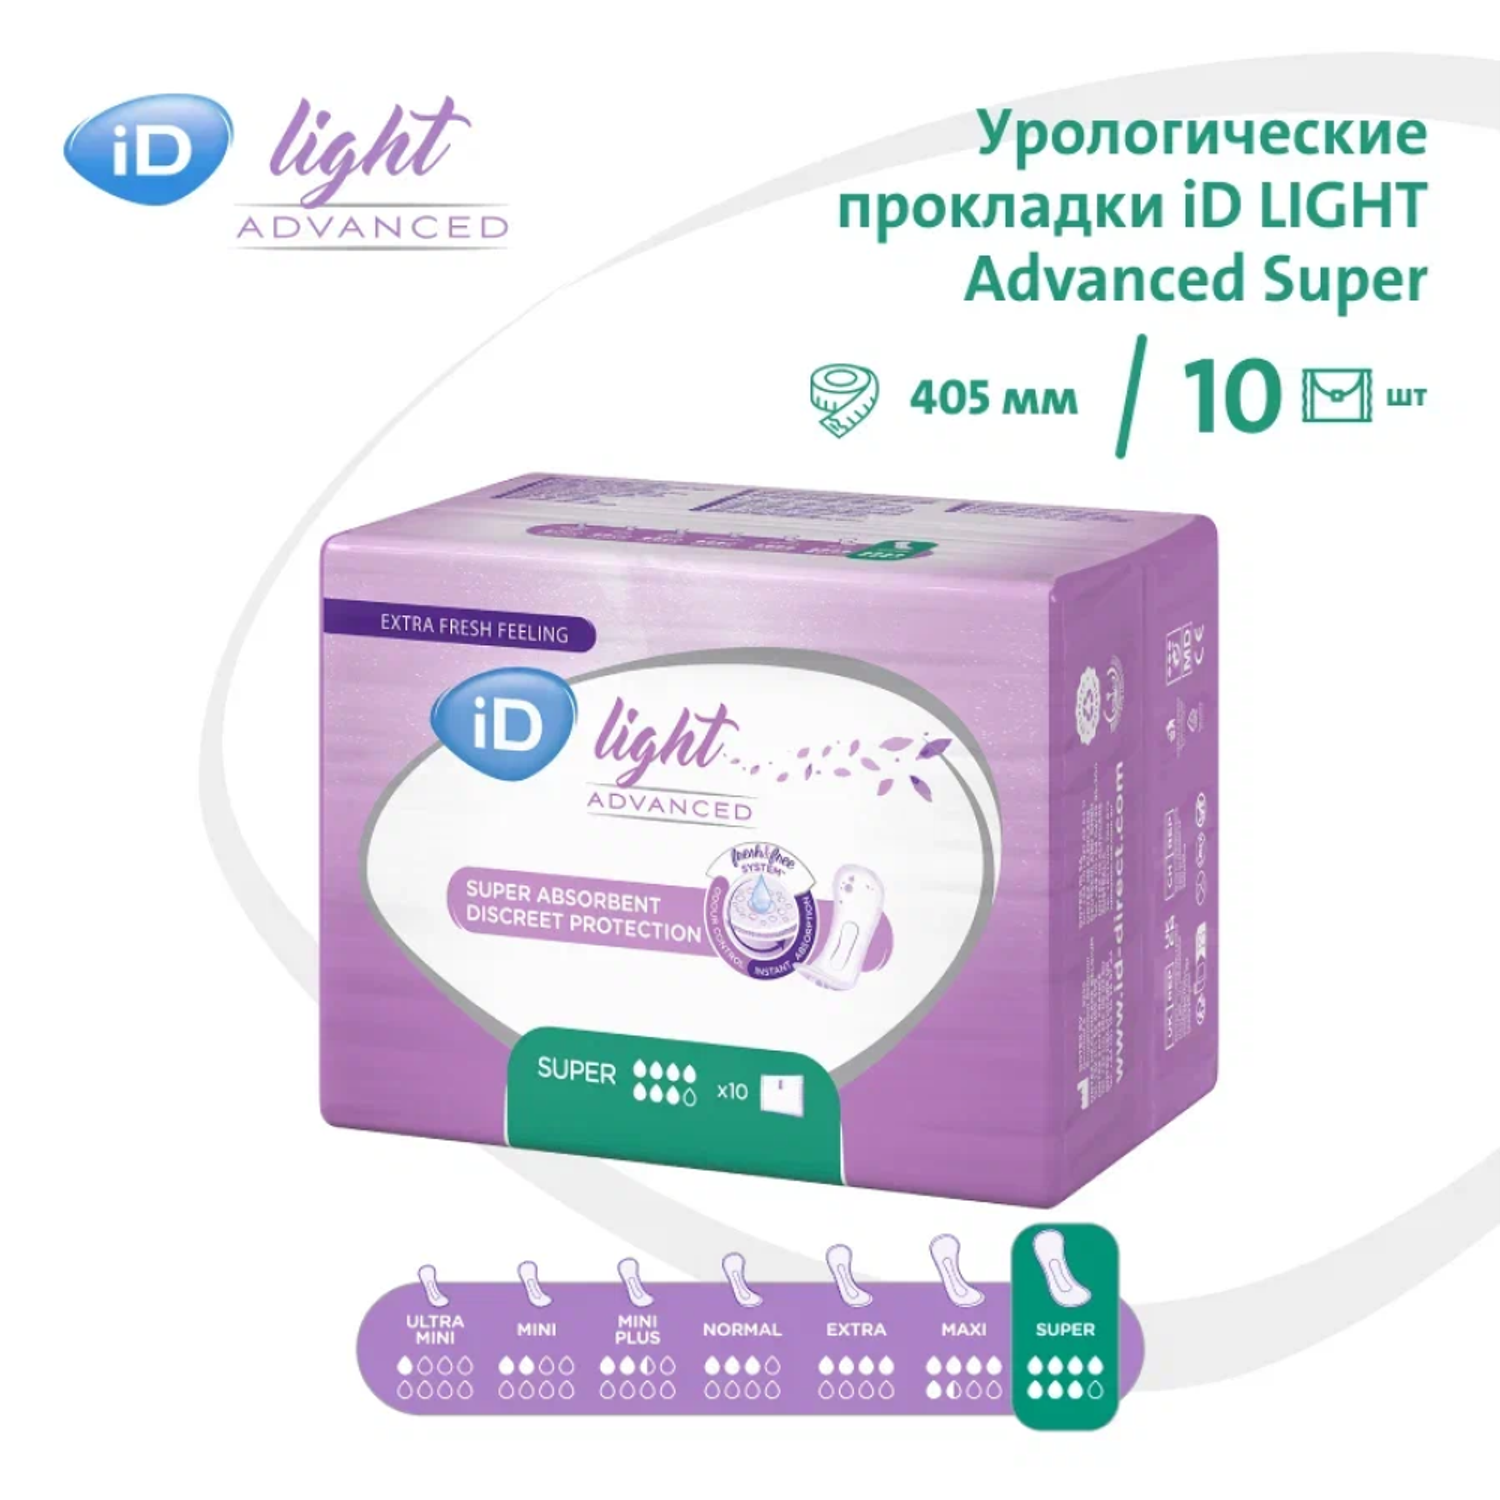 Урологические прокладки iD Light Advanced Super 10 шт - фото 1